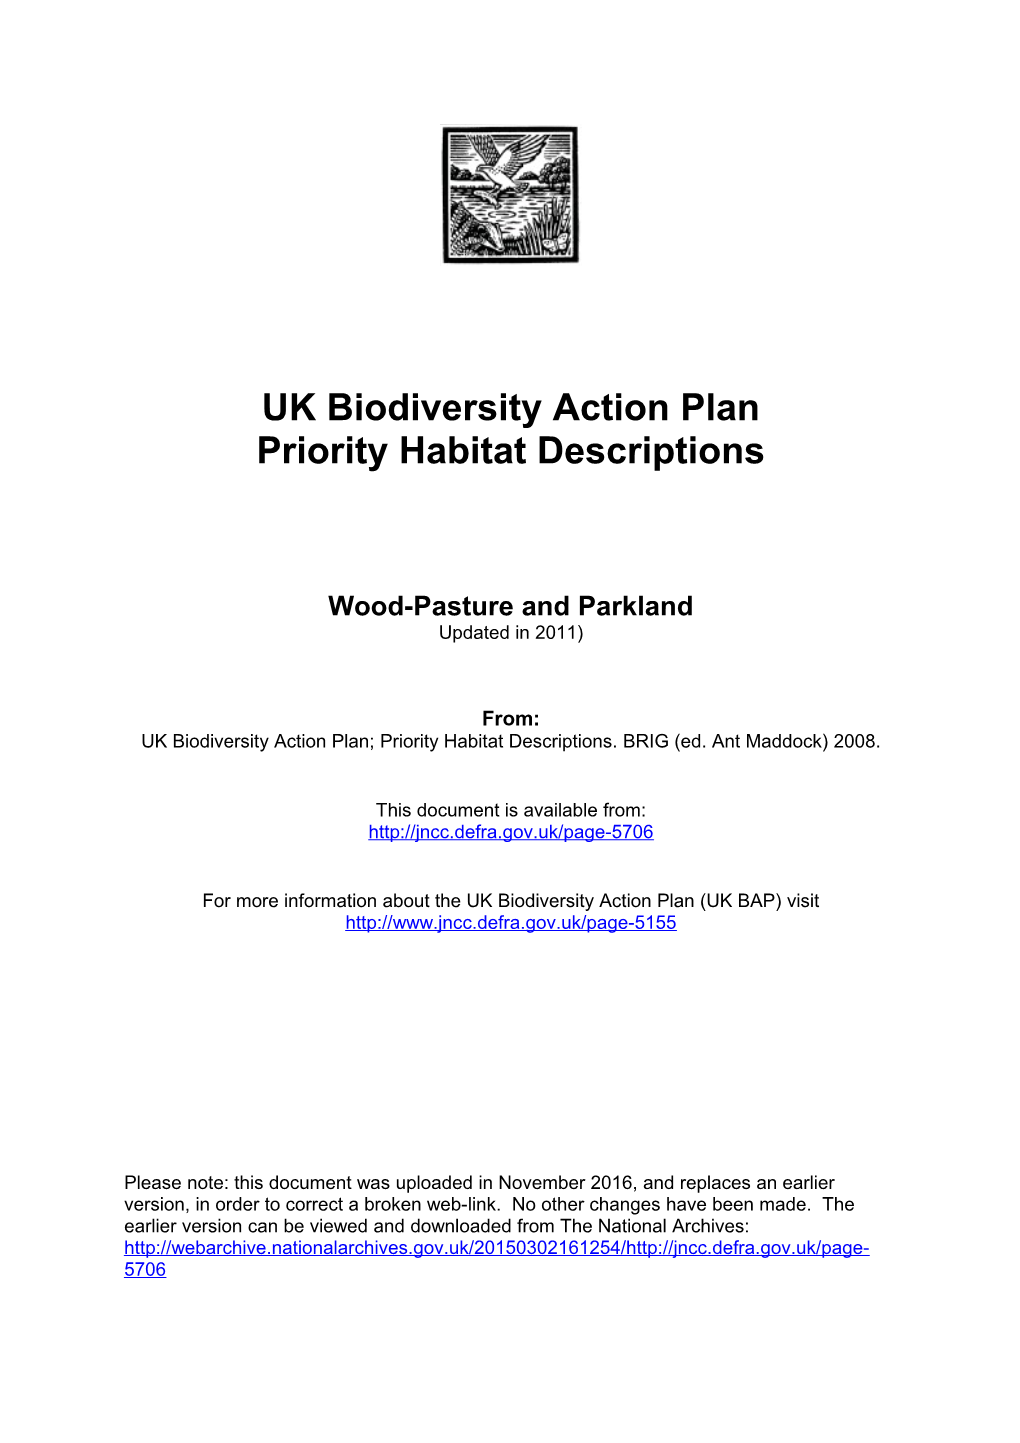 UK Biodiversity Action Plan s1